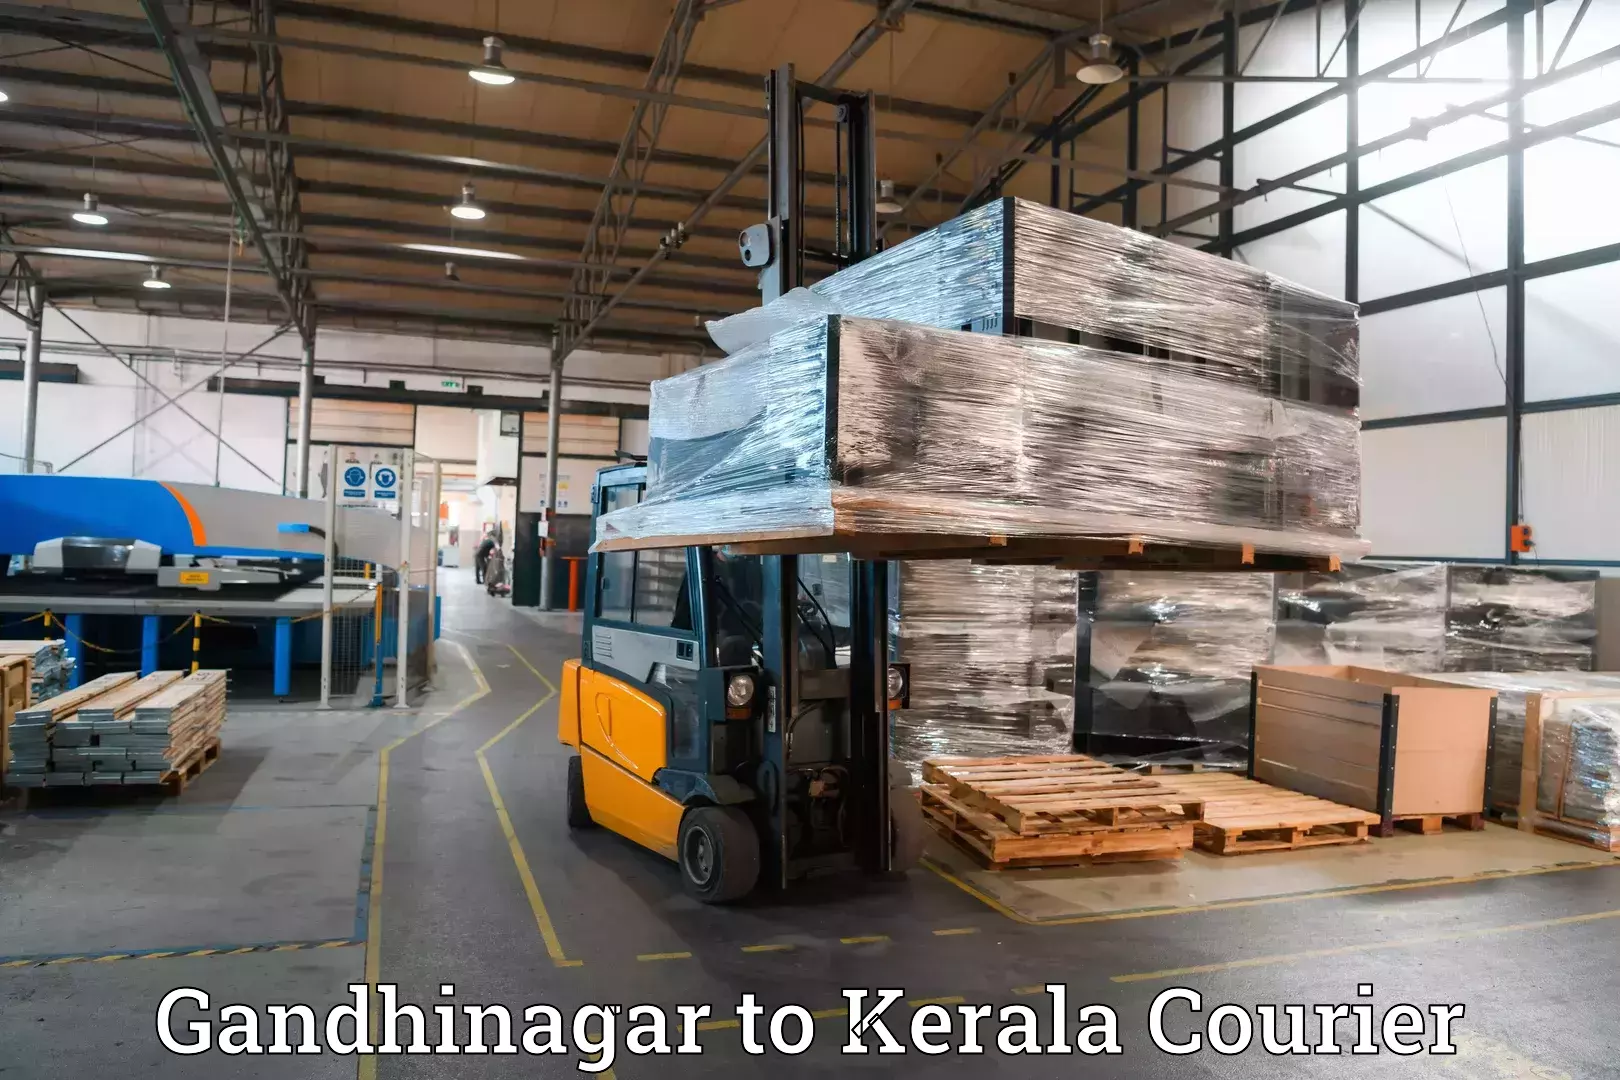 Luggage delivery app Gandhinagar to Kerala